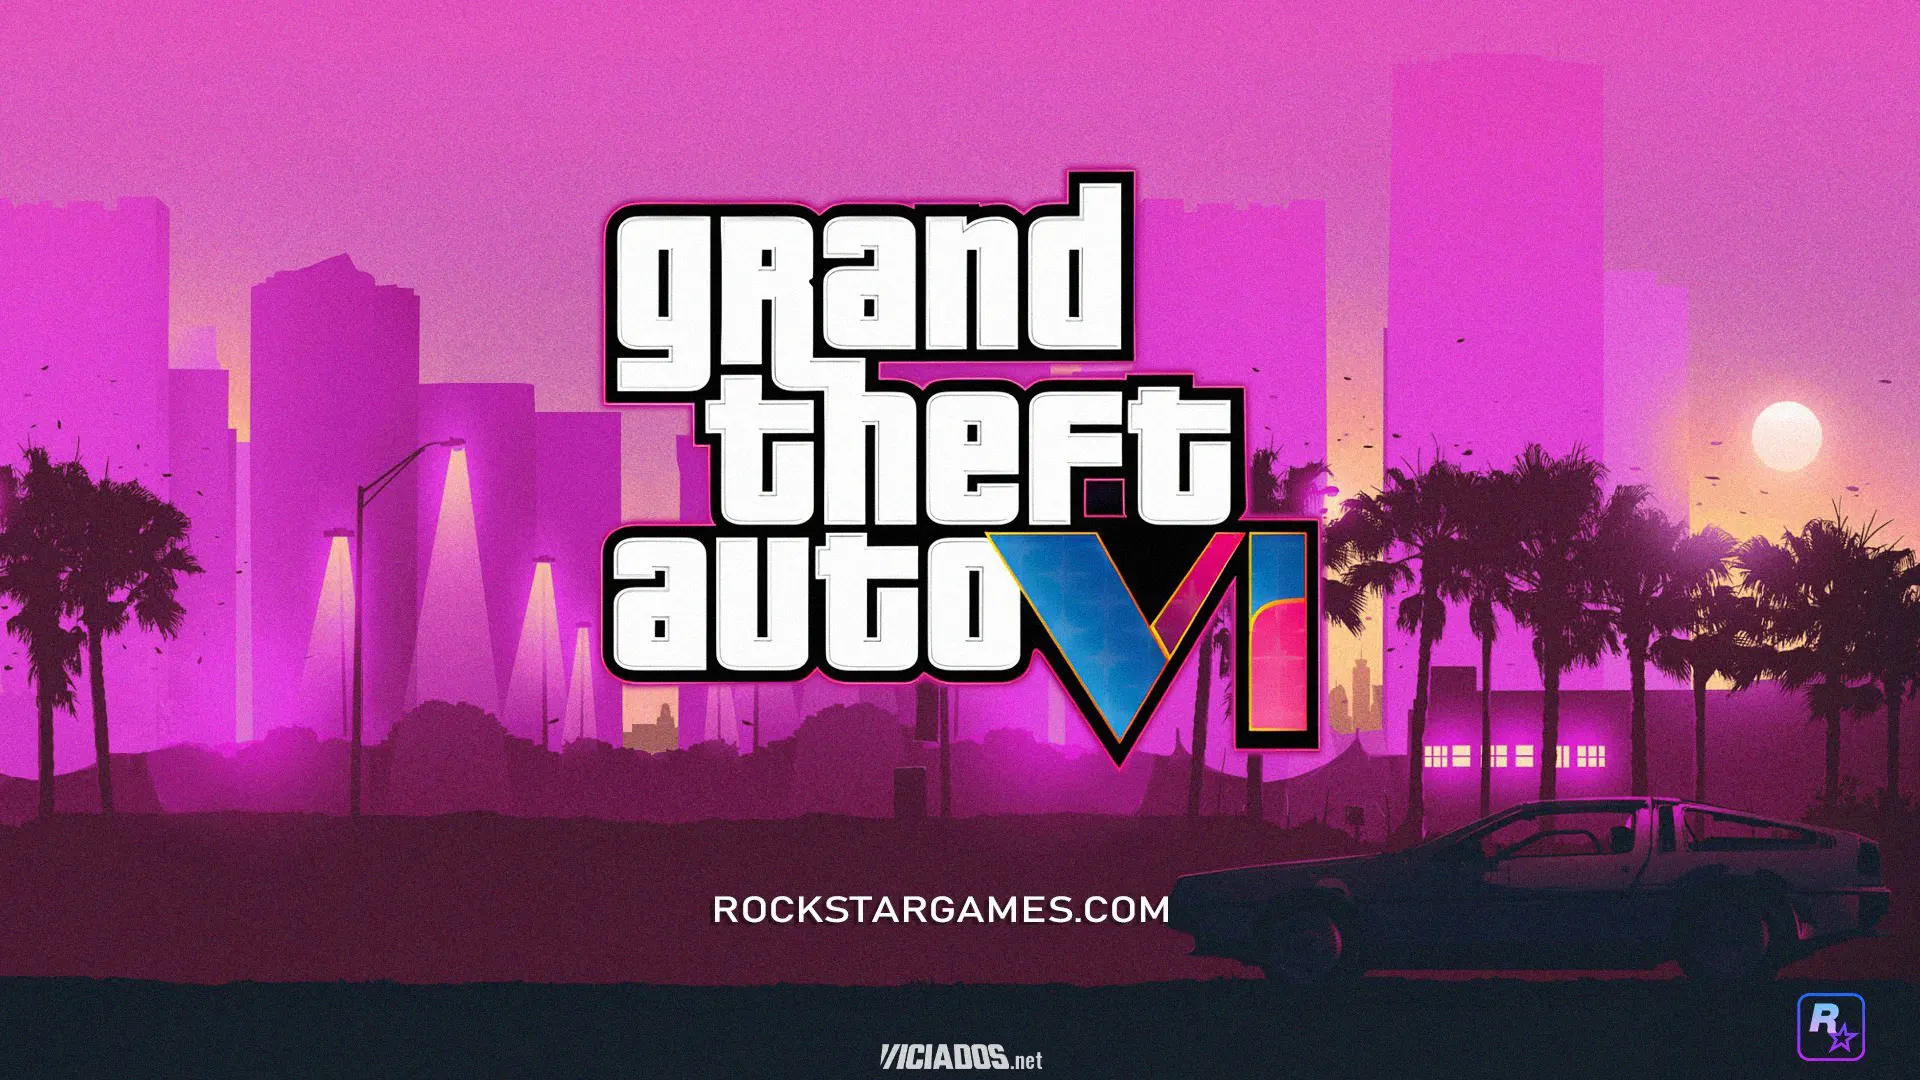 GTA 6 | Vaza roteiro e informações do trailer de apresentação de Grand Theft Auto VI 2023 Viciados